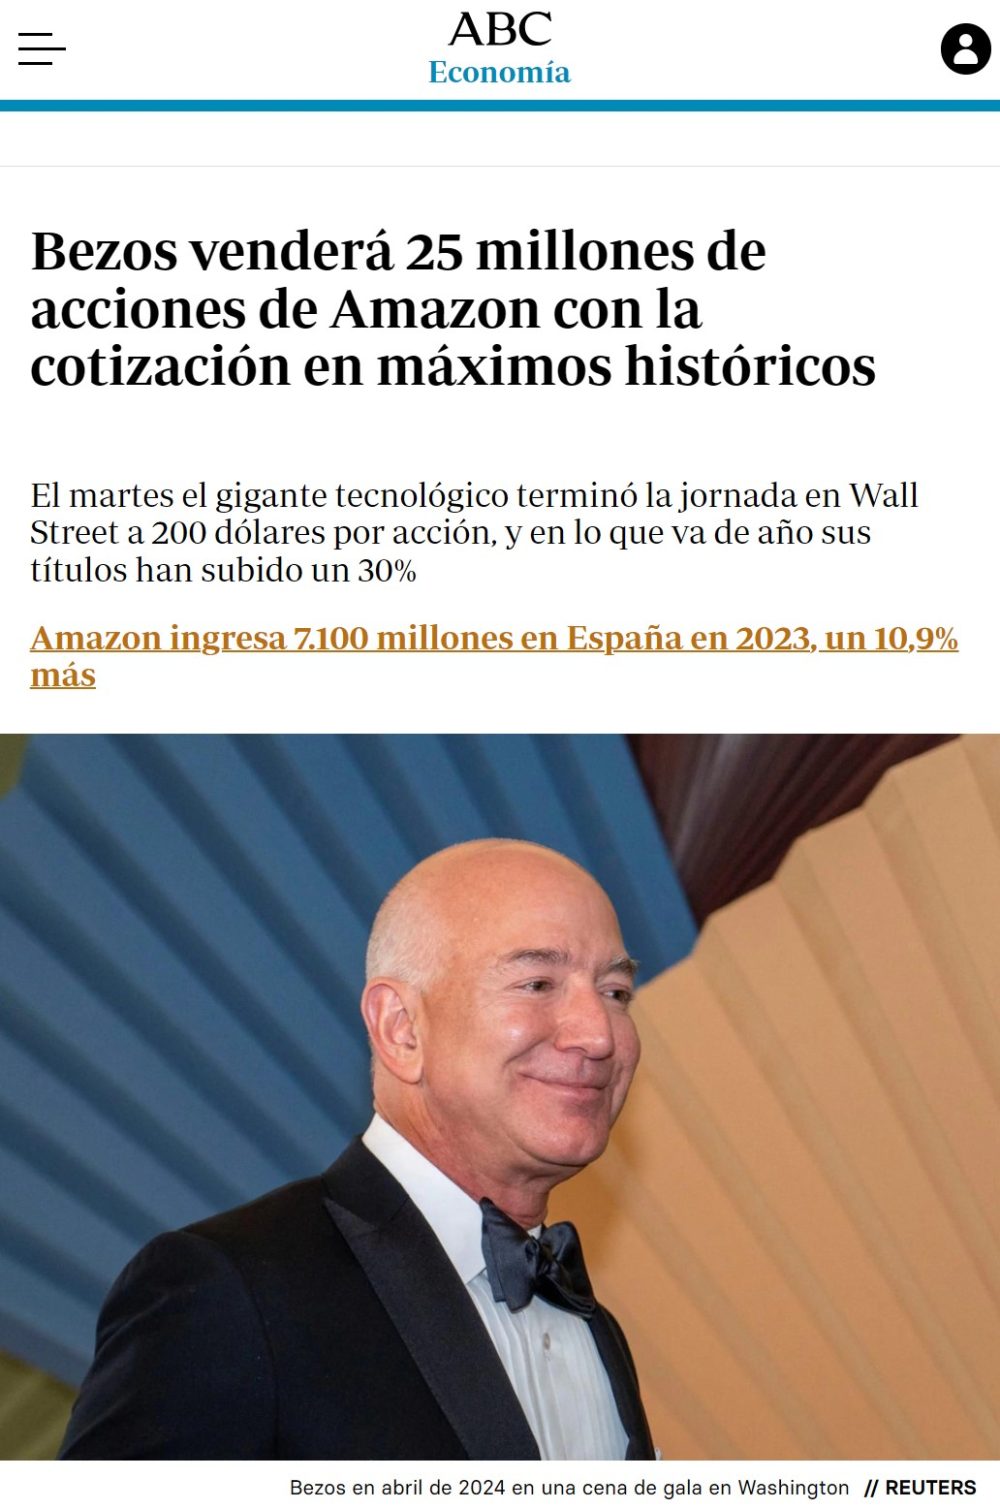 Jeff Bezos venderá 25 millones de acciones de Amazon.